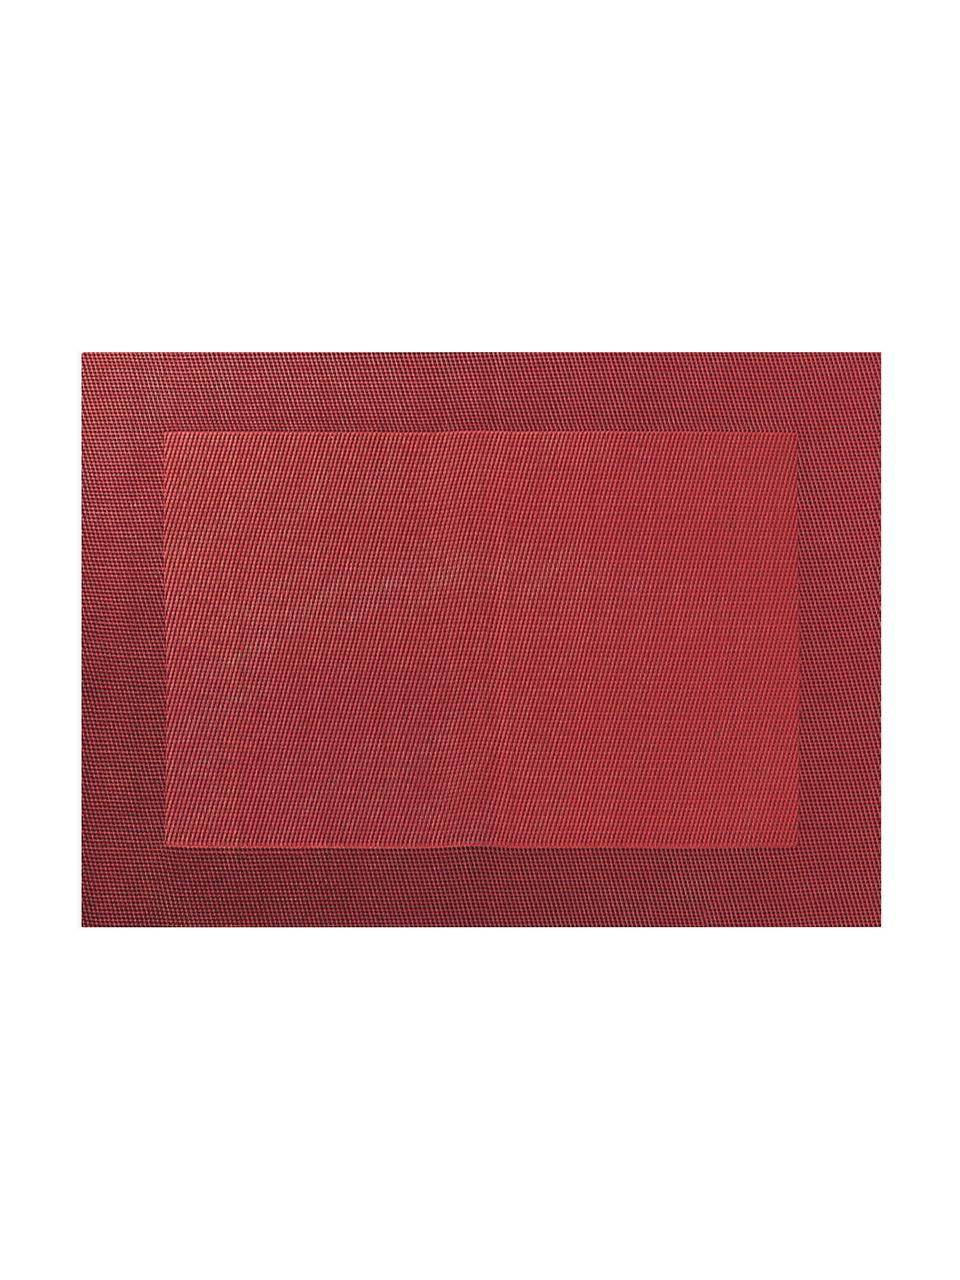 Tovaglietta americana Trefl 2 pz, Materiale sintetico (PVC), Rosso, Larg. 33 x Lung. 46 cm